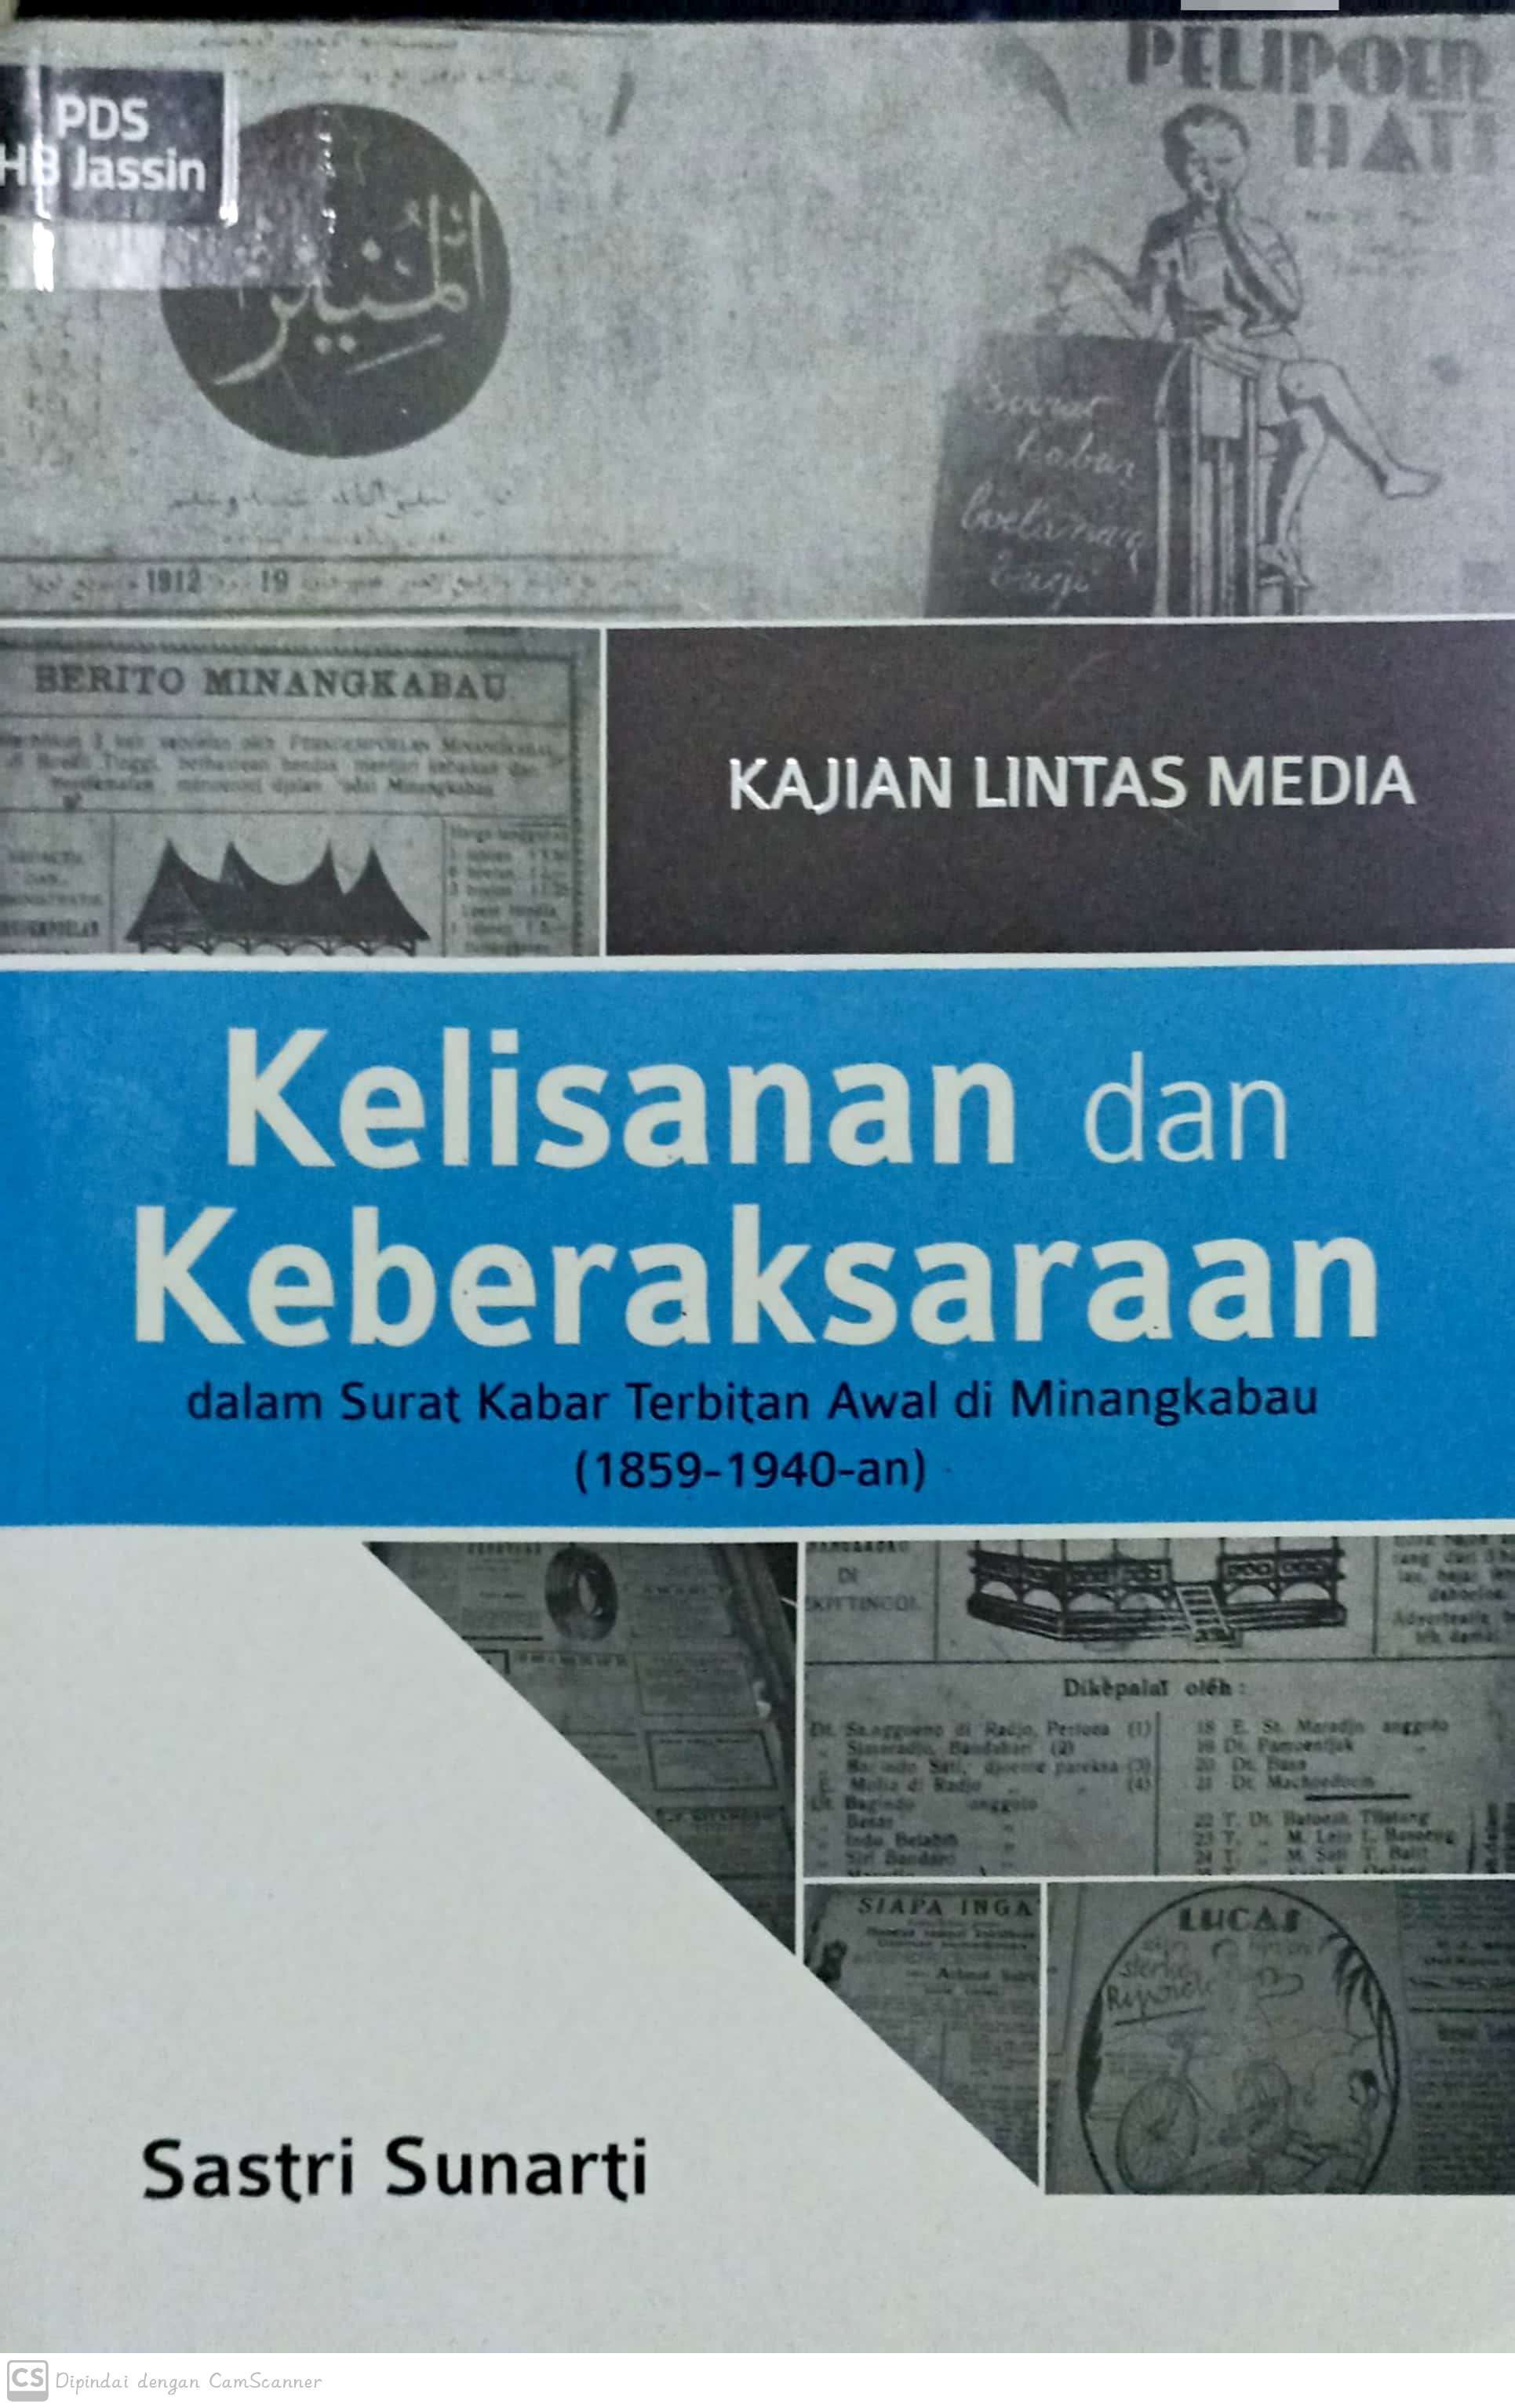 Kajian lintas media kelisanan dan keberaksaraan :  dalam surat kabar terbitan awal di minangkabau